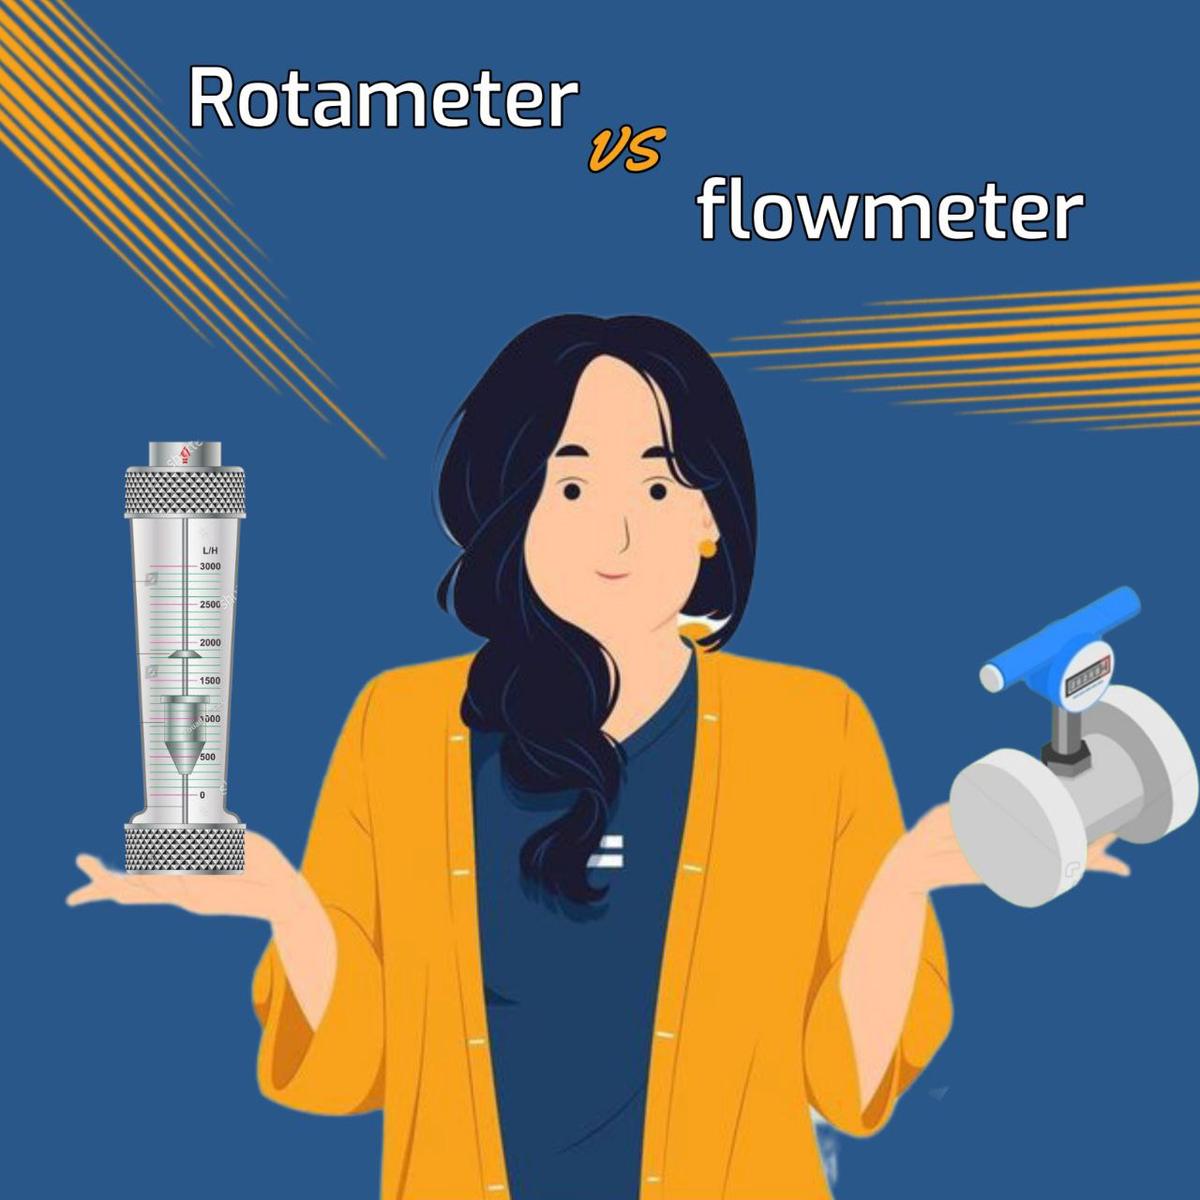 روتامتر چیست و چه تفاوتی با فلومتر دارد؟